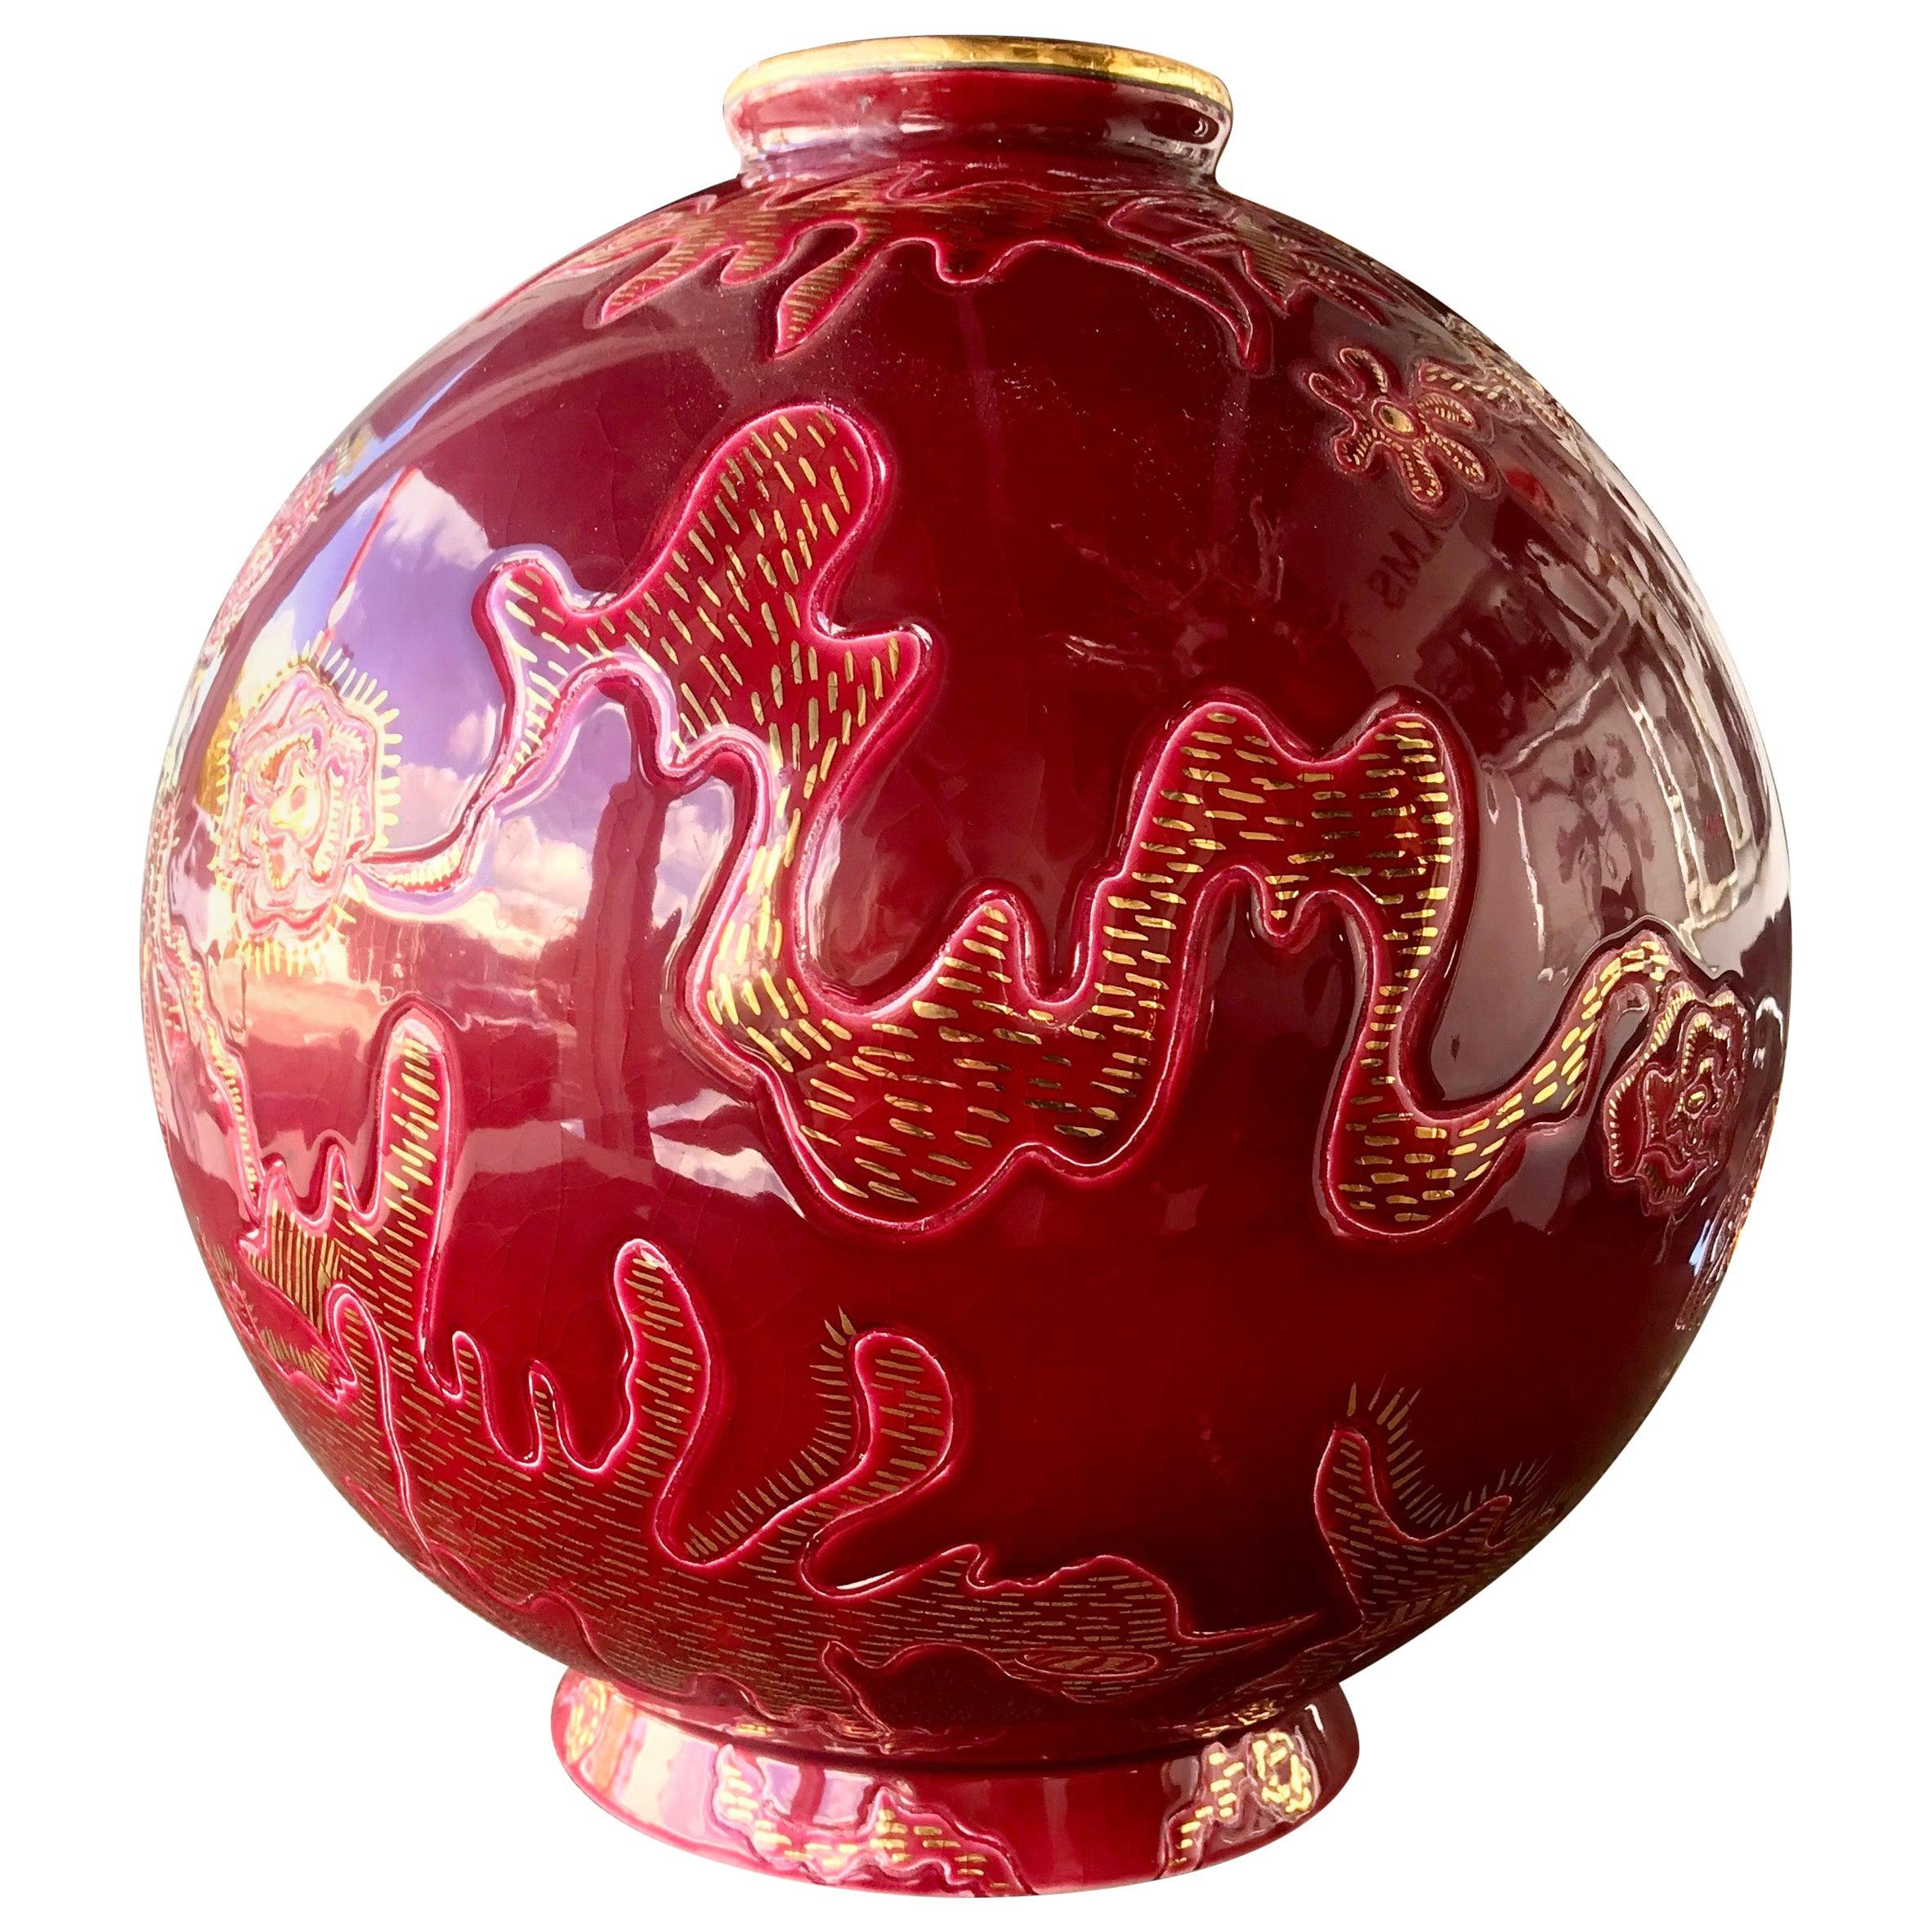 Seltene Emaux de Longwy Keramische Boule Vase von Garouste and Bonetti Limitiert 1 von 5